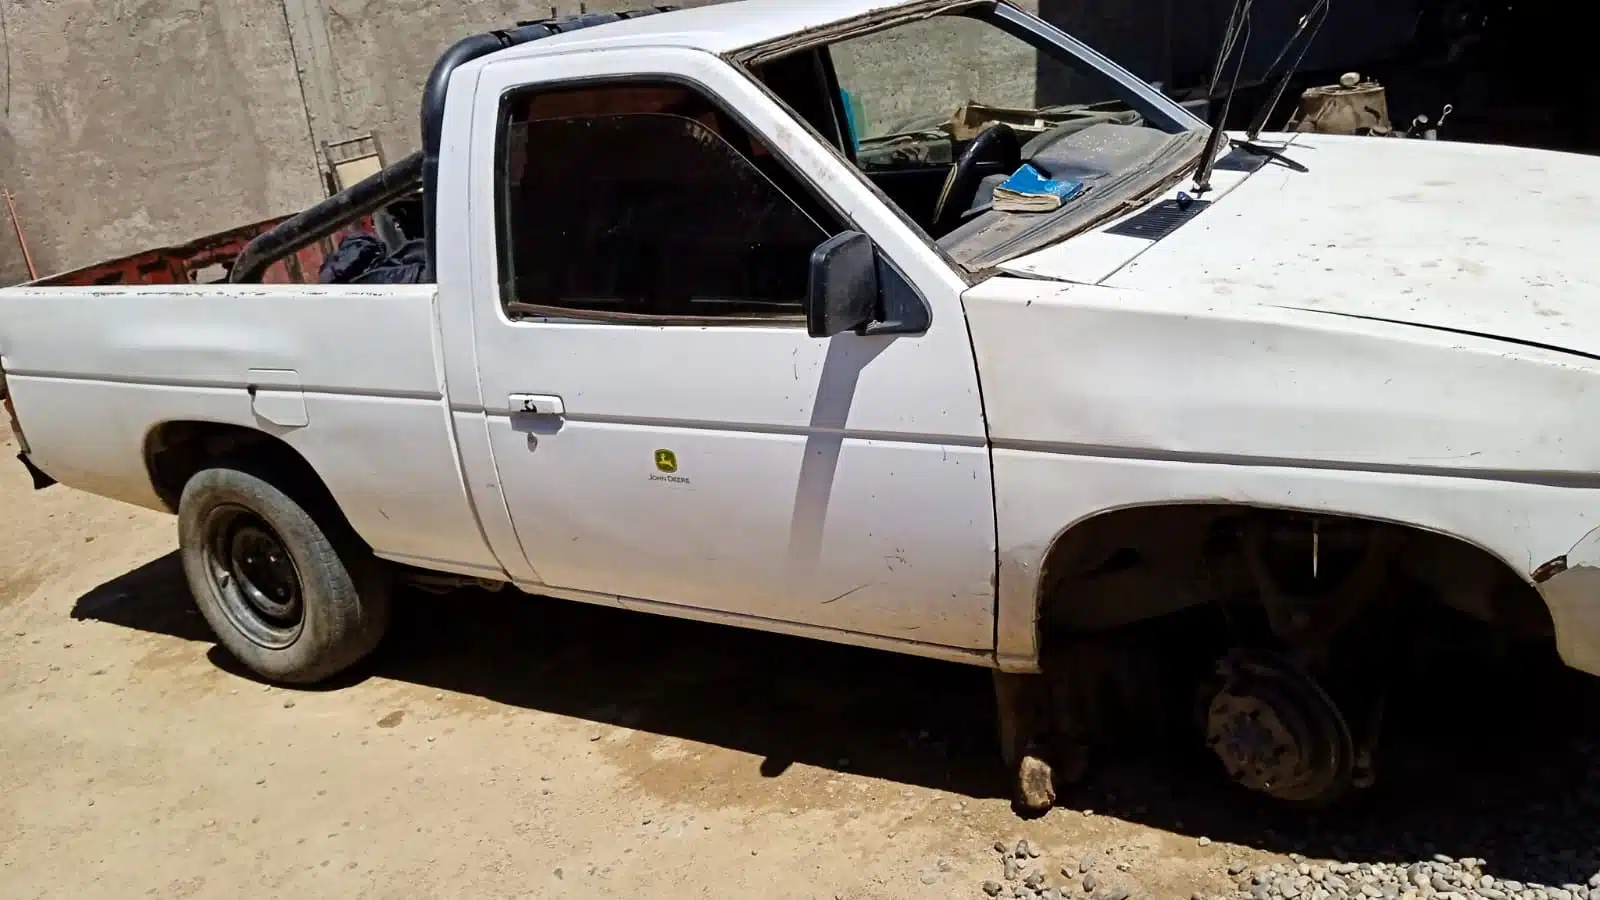 Camioneta blanca robada en Culiacán